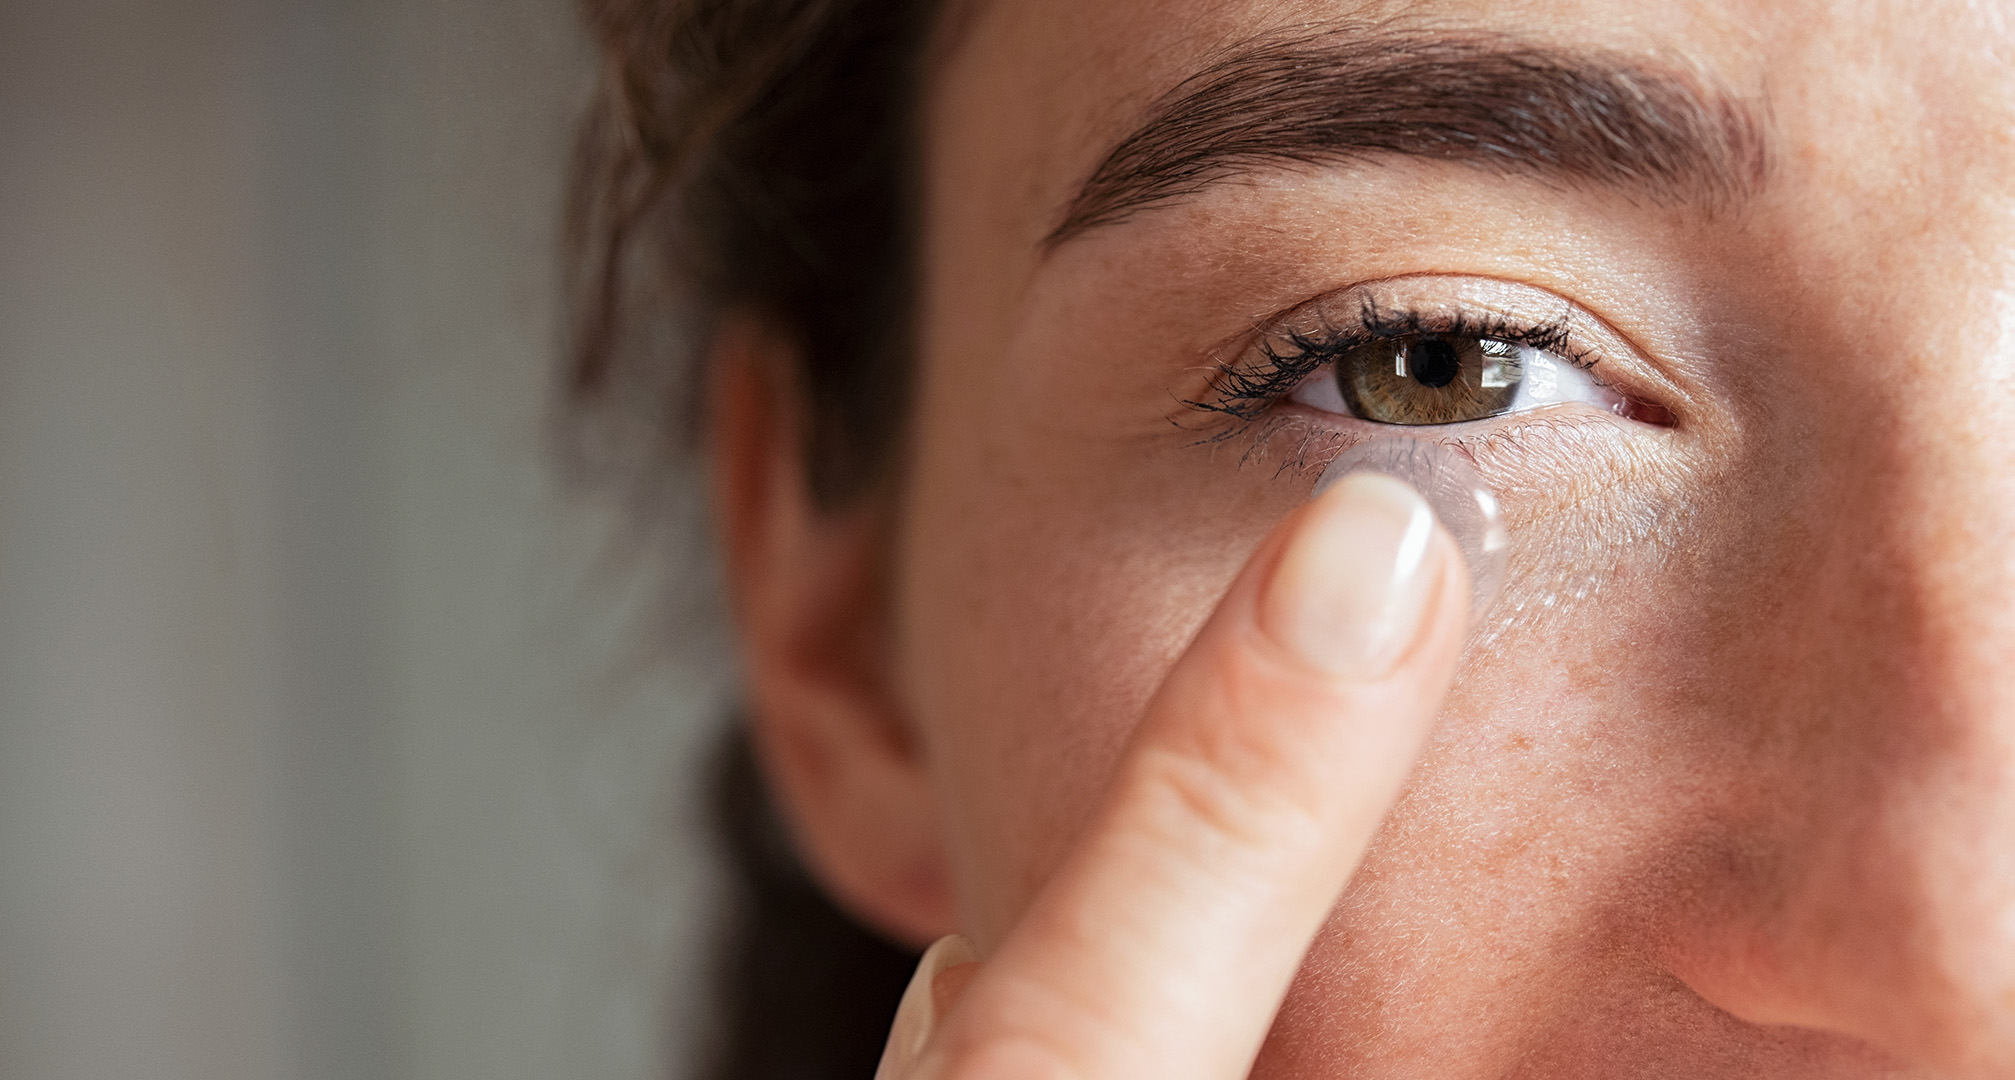 nærbillede af en person, der holder en kontaktlinse foran øjet 